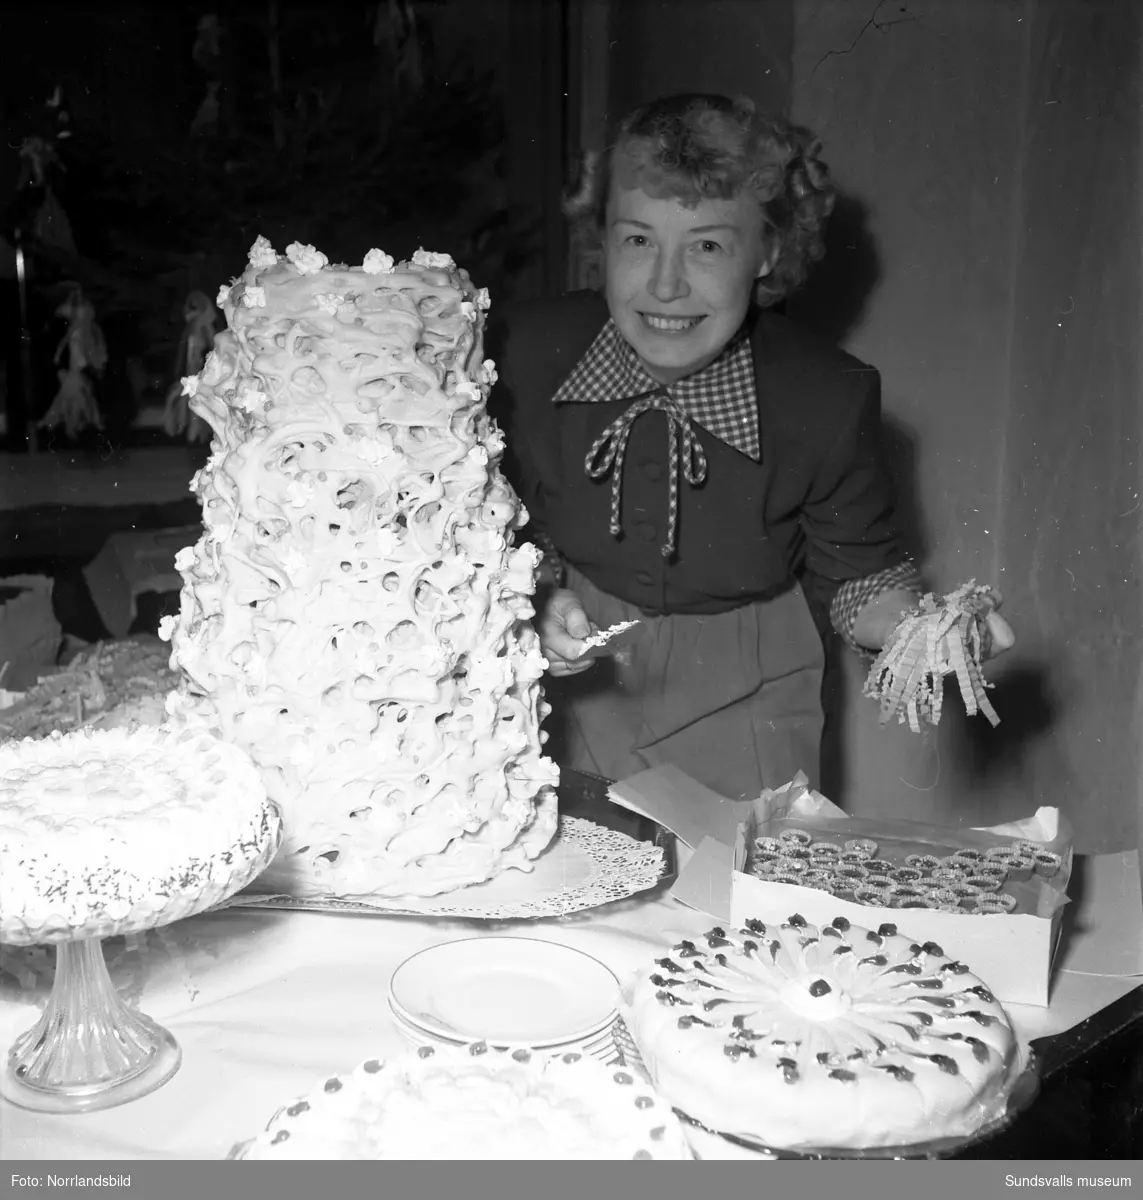 Hörselfrämjandets mässa på Församlingshuset. Kvinnor vid ett bord fullt av tårtor och andra godsaker, bland annat en imponerande spettekaka. En flicka och ett dockskåp.